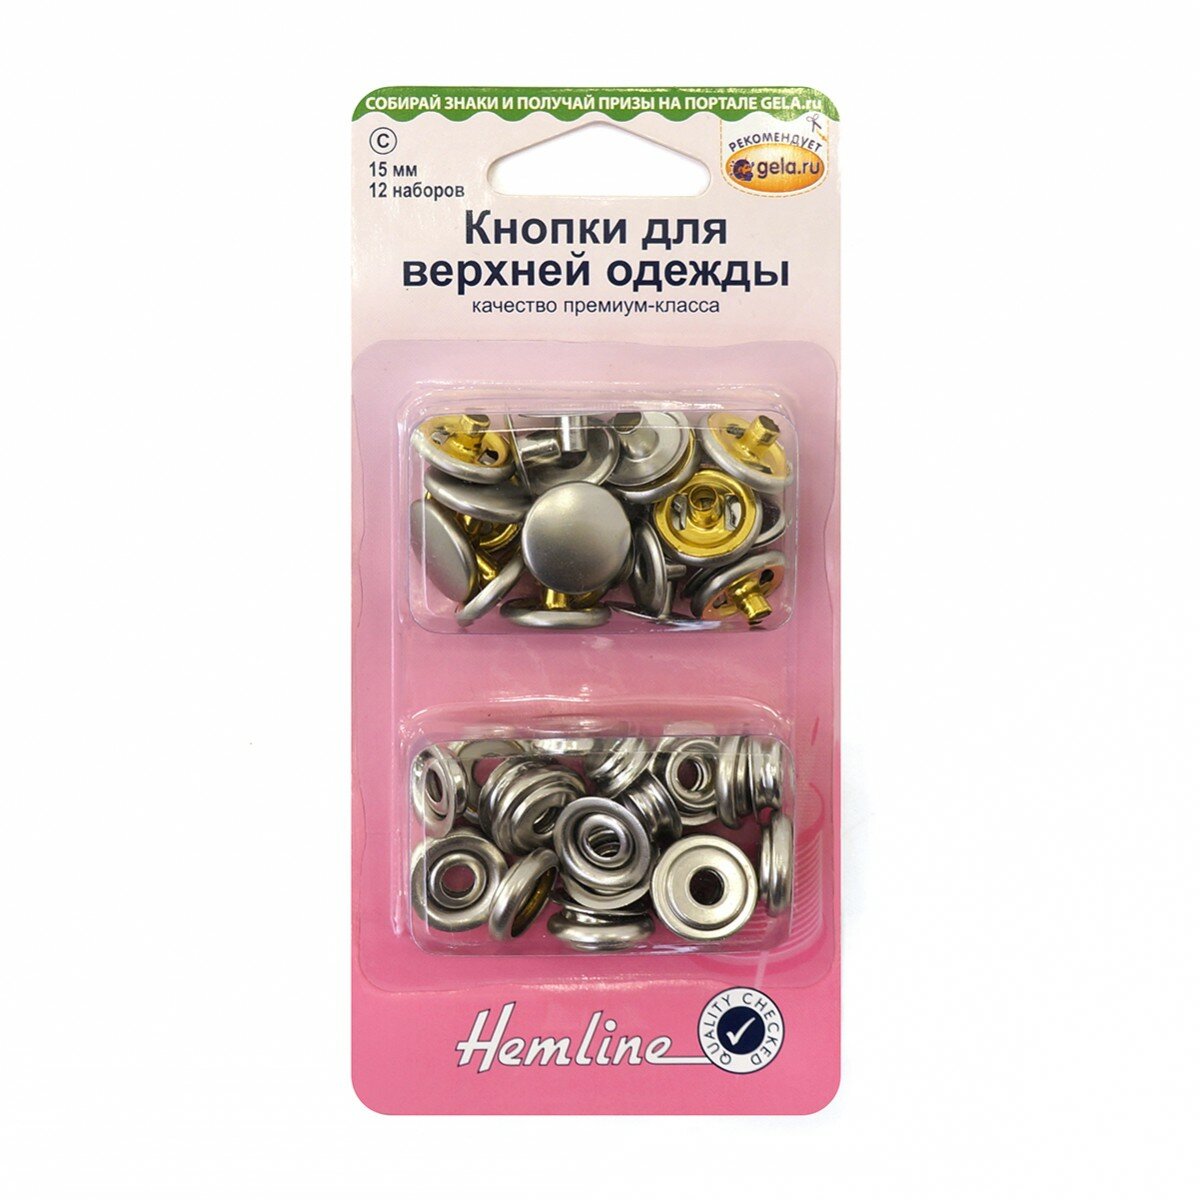 Кнопки для верхней одежды никель 15 мм HEMLINE 405R. N